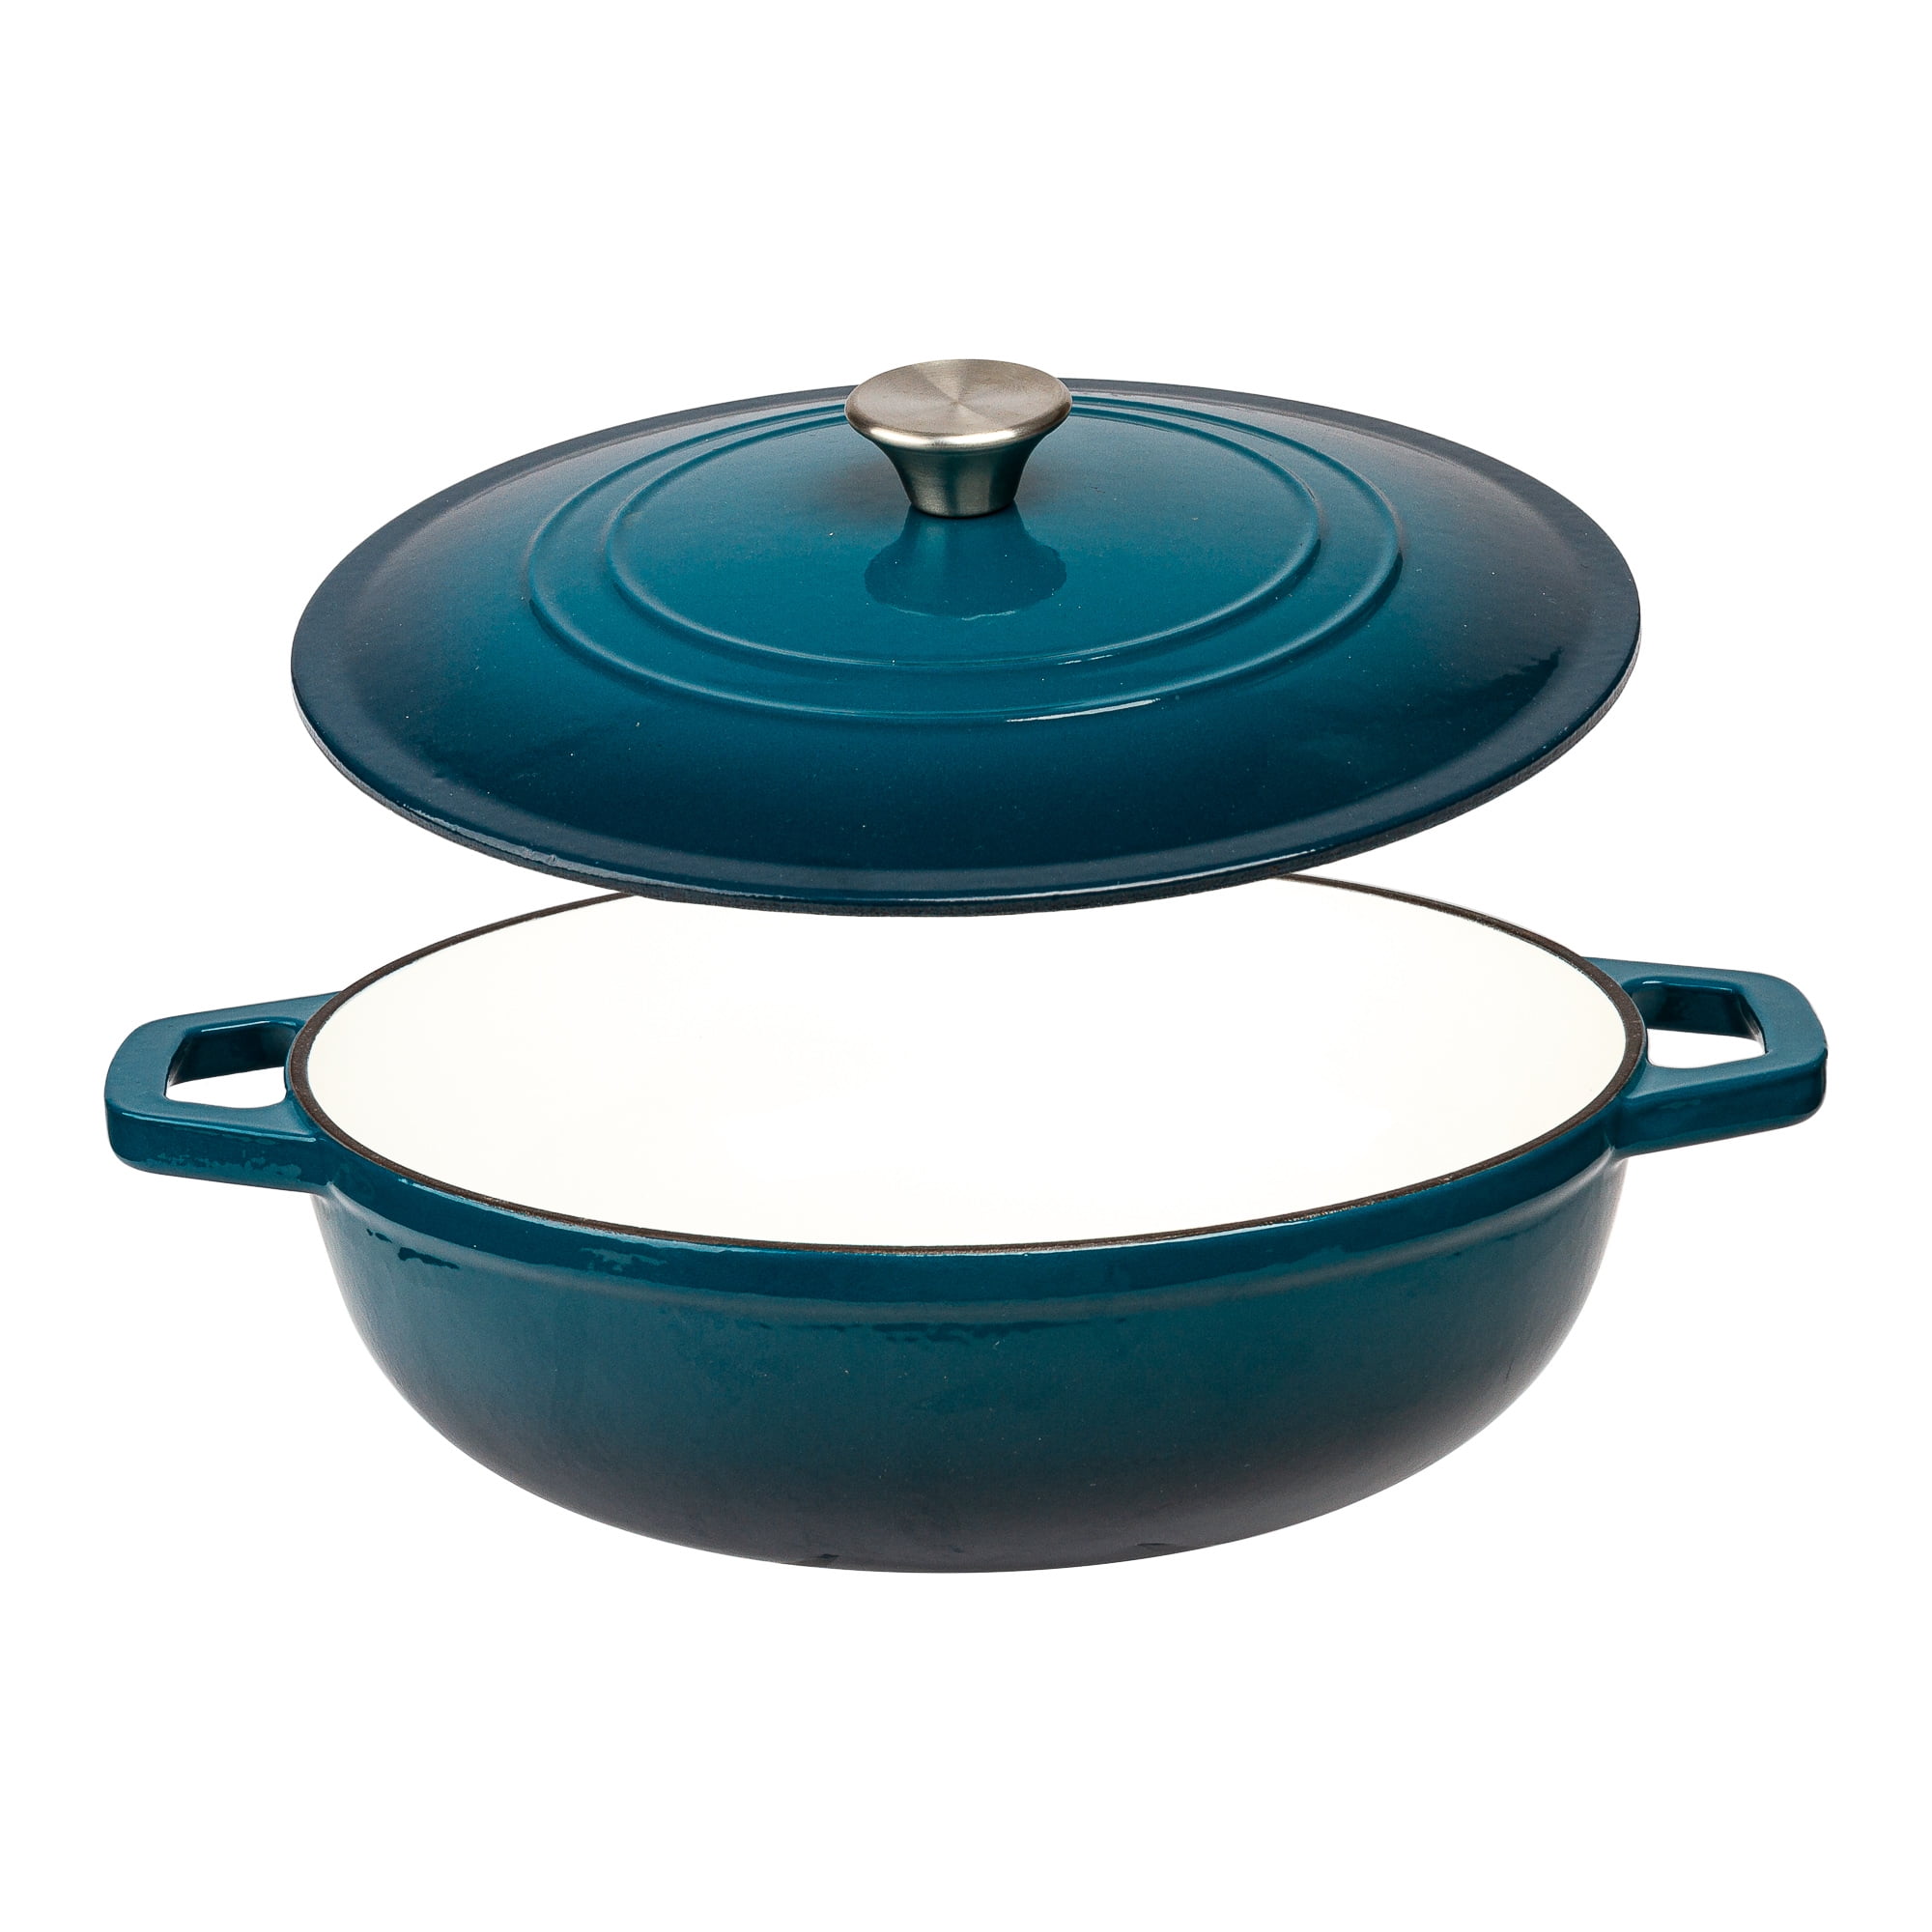 LEXI HOME 5 qt. Durable Cast Iron Low Pot Dutch Oven in Blue Ombre